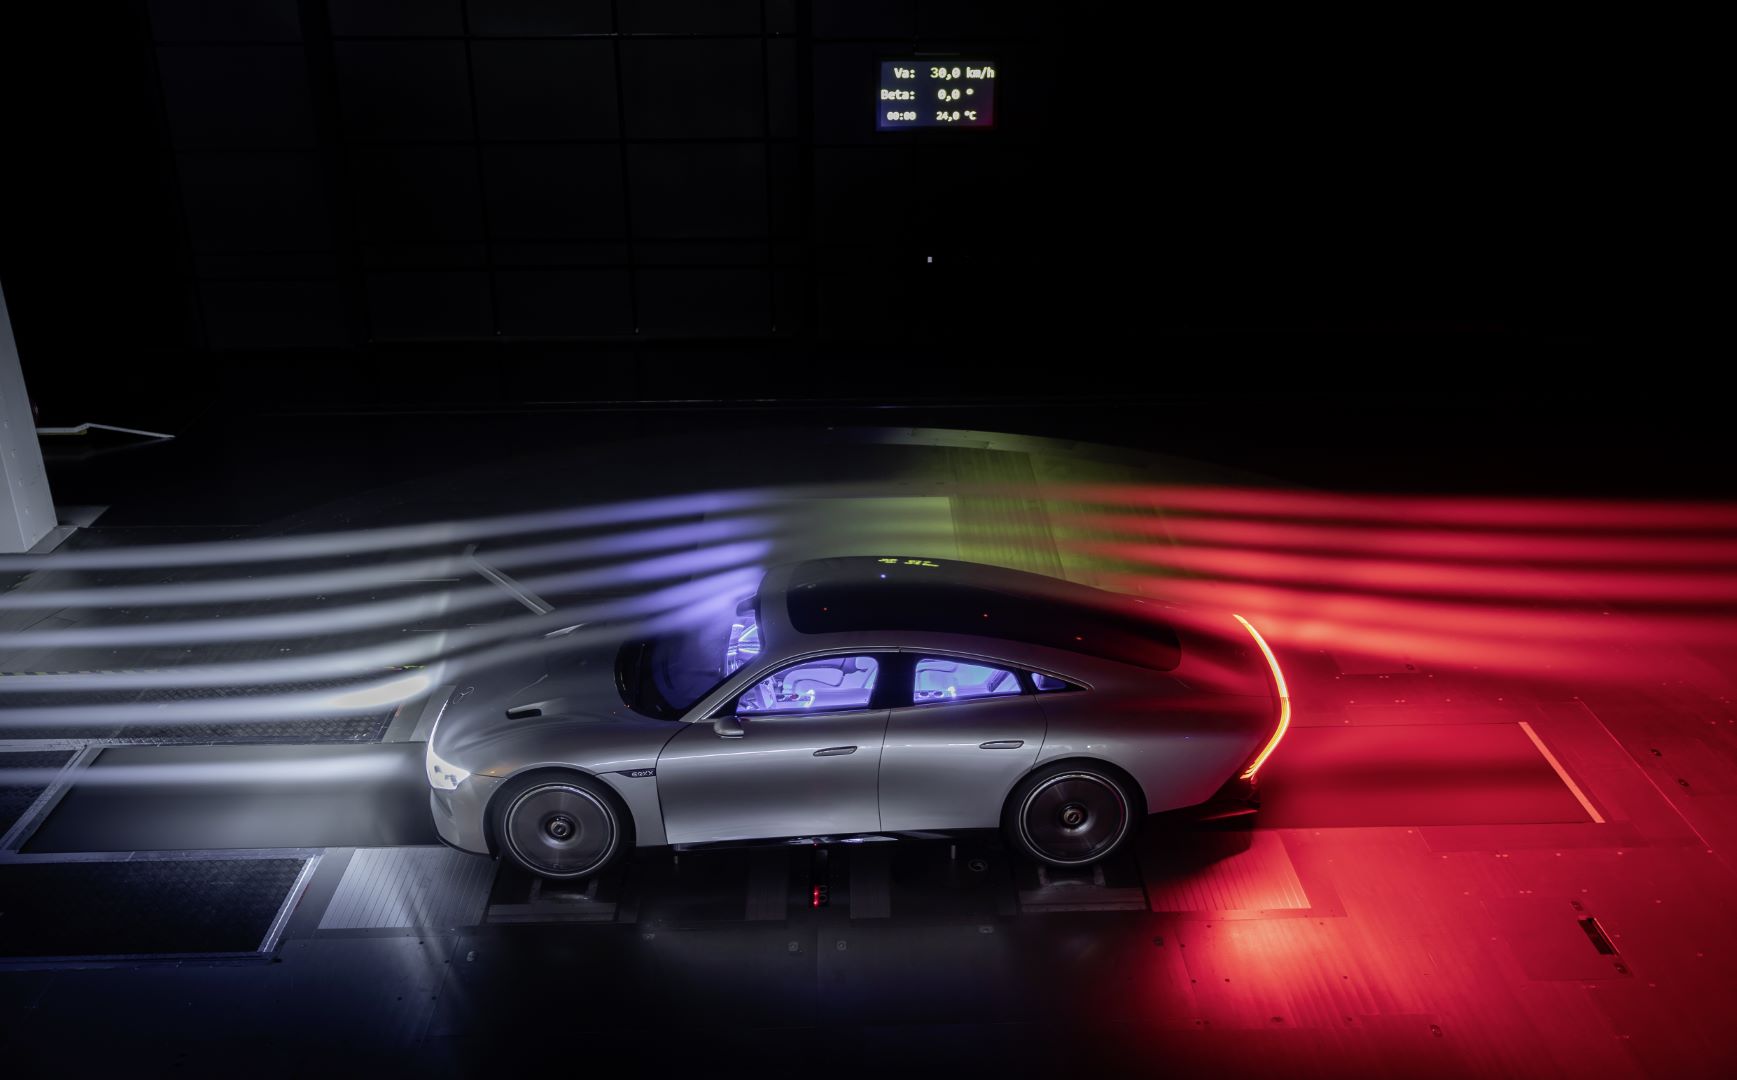 Mercedes-Benz trình làng concept Vision EQXX, mẫu xe tương lai với màn hình 8K 47.5-inch và phạm vi hoạt động lên đến 1,000 km